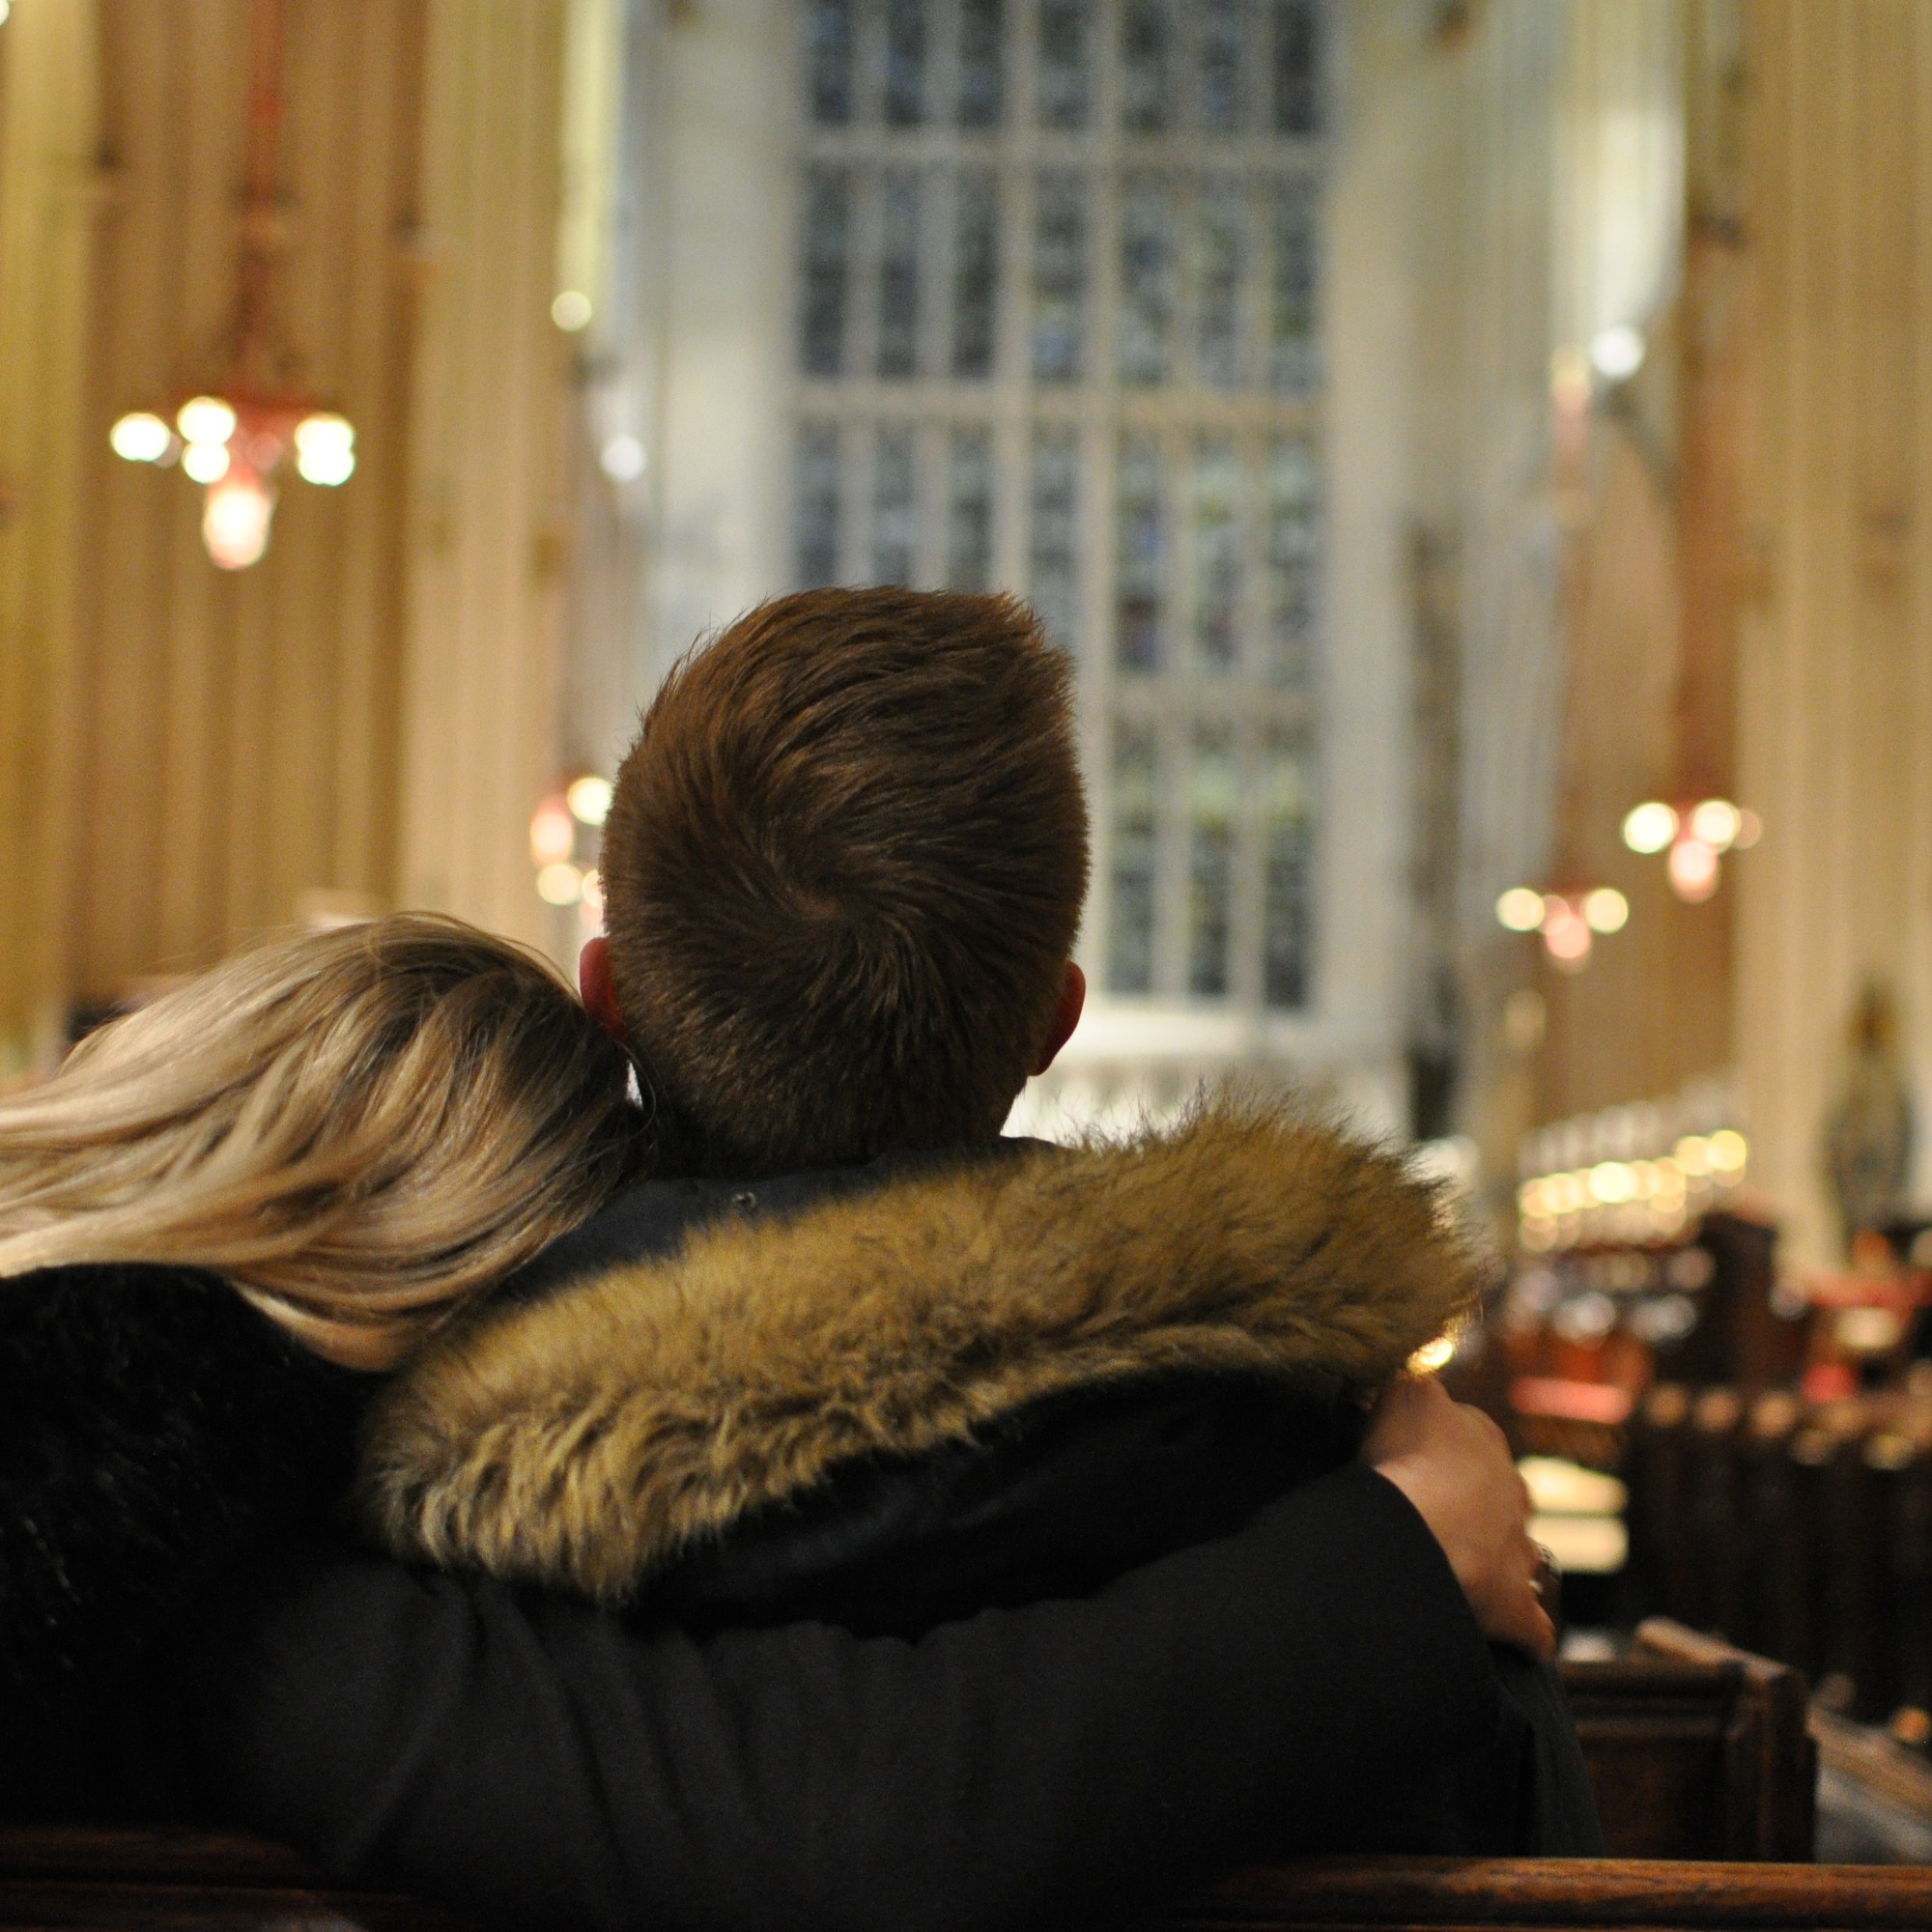 un couple de dos, elle la tête sur son épaule à lui, assis au fond d'une église toute illuminée